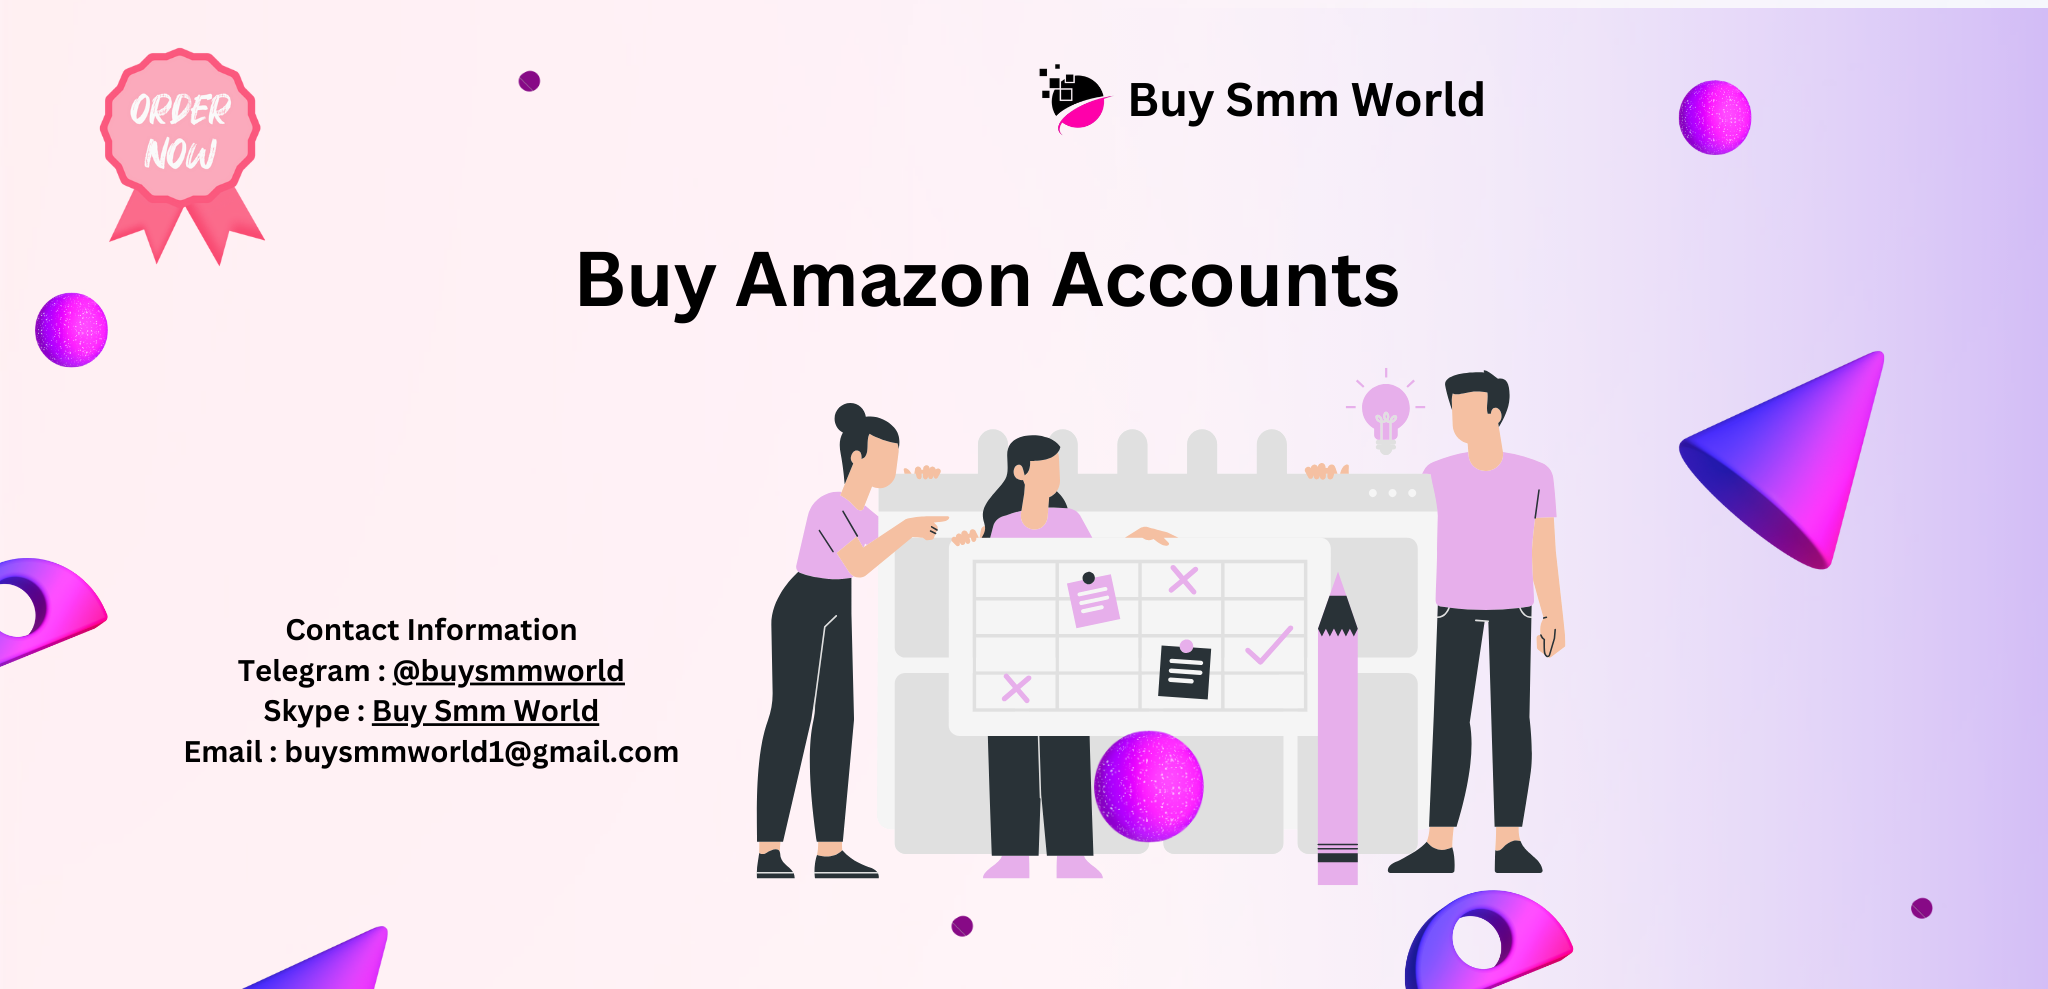 Buy Amazon Accounts
